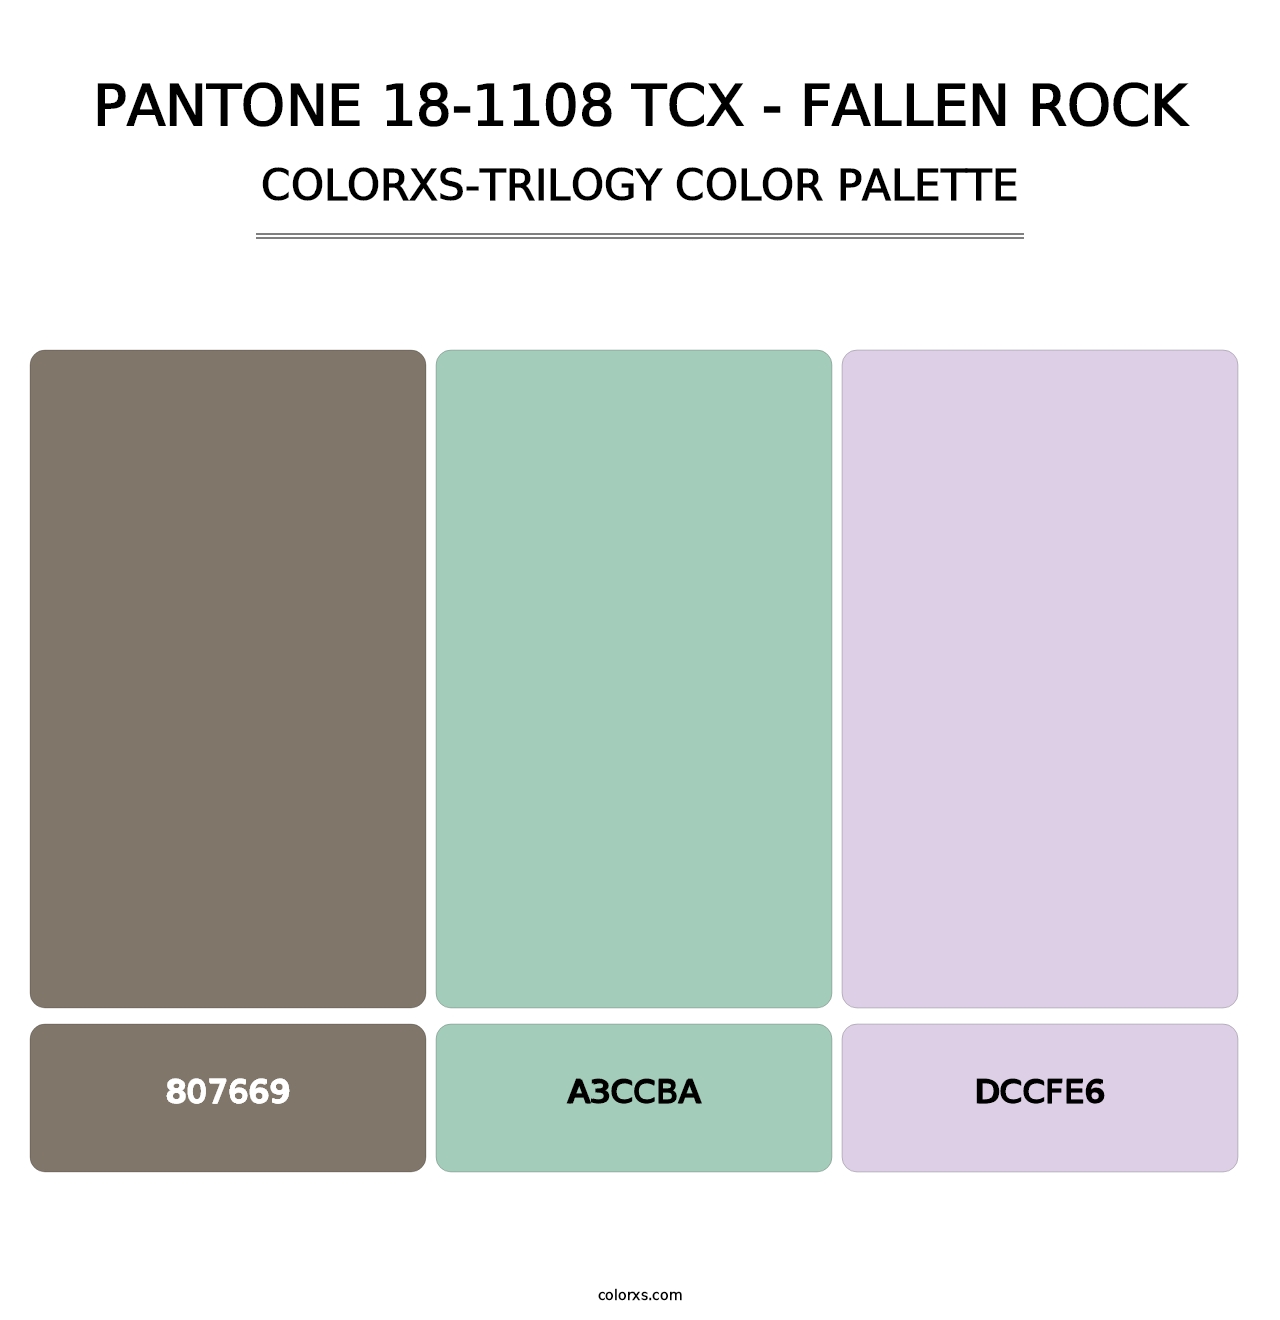 PANTONE 18-1108 TCX - Fallen Rock - Colorxs Trilogy Palette